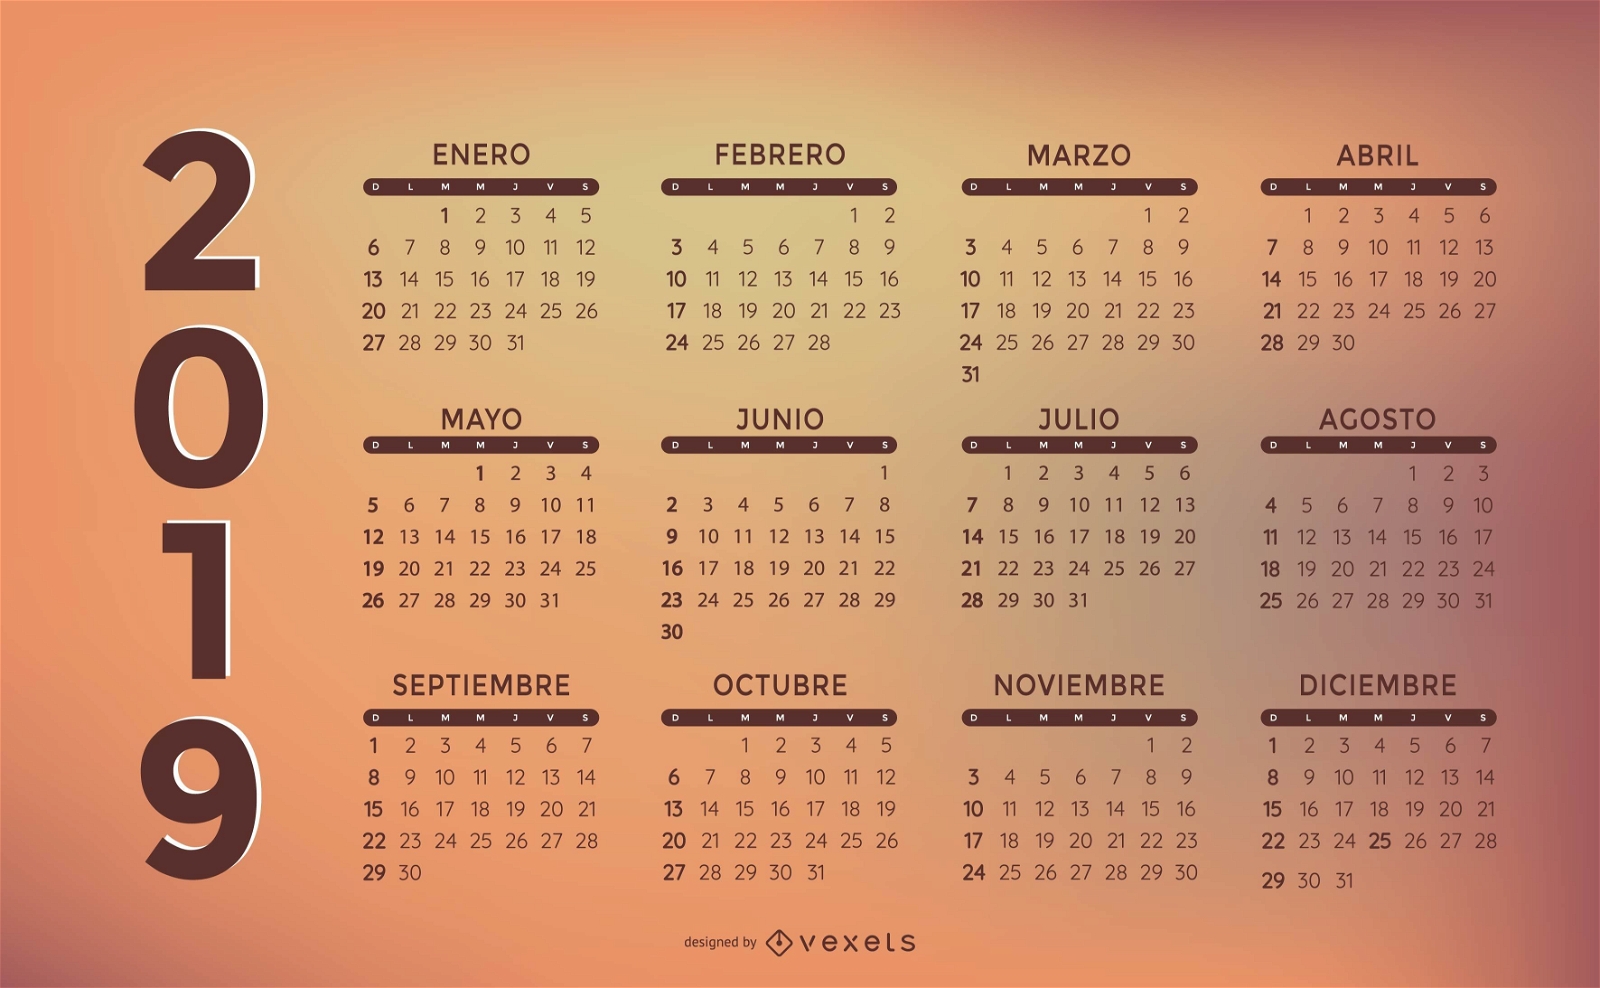 Design elegante do calendário espanhol 2019